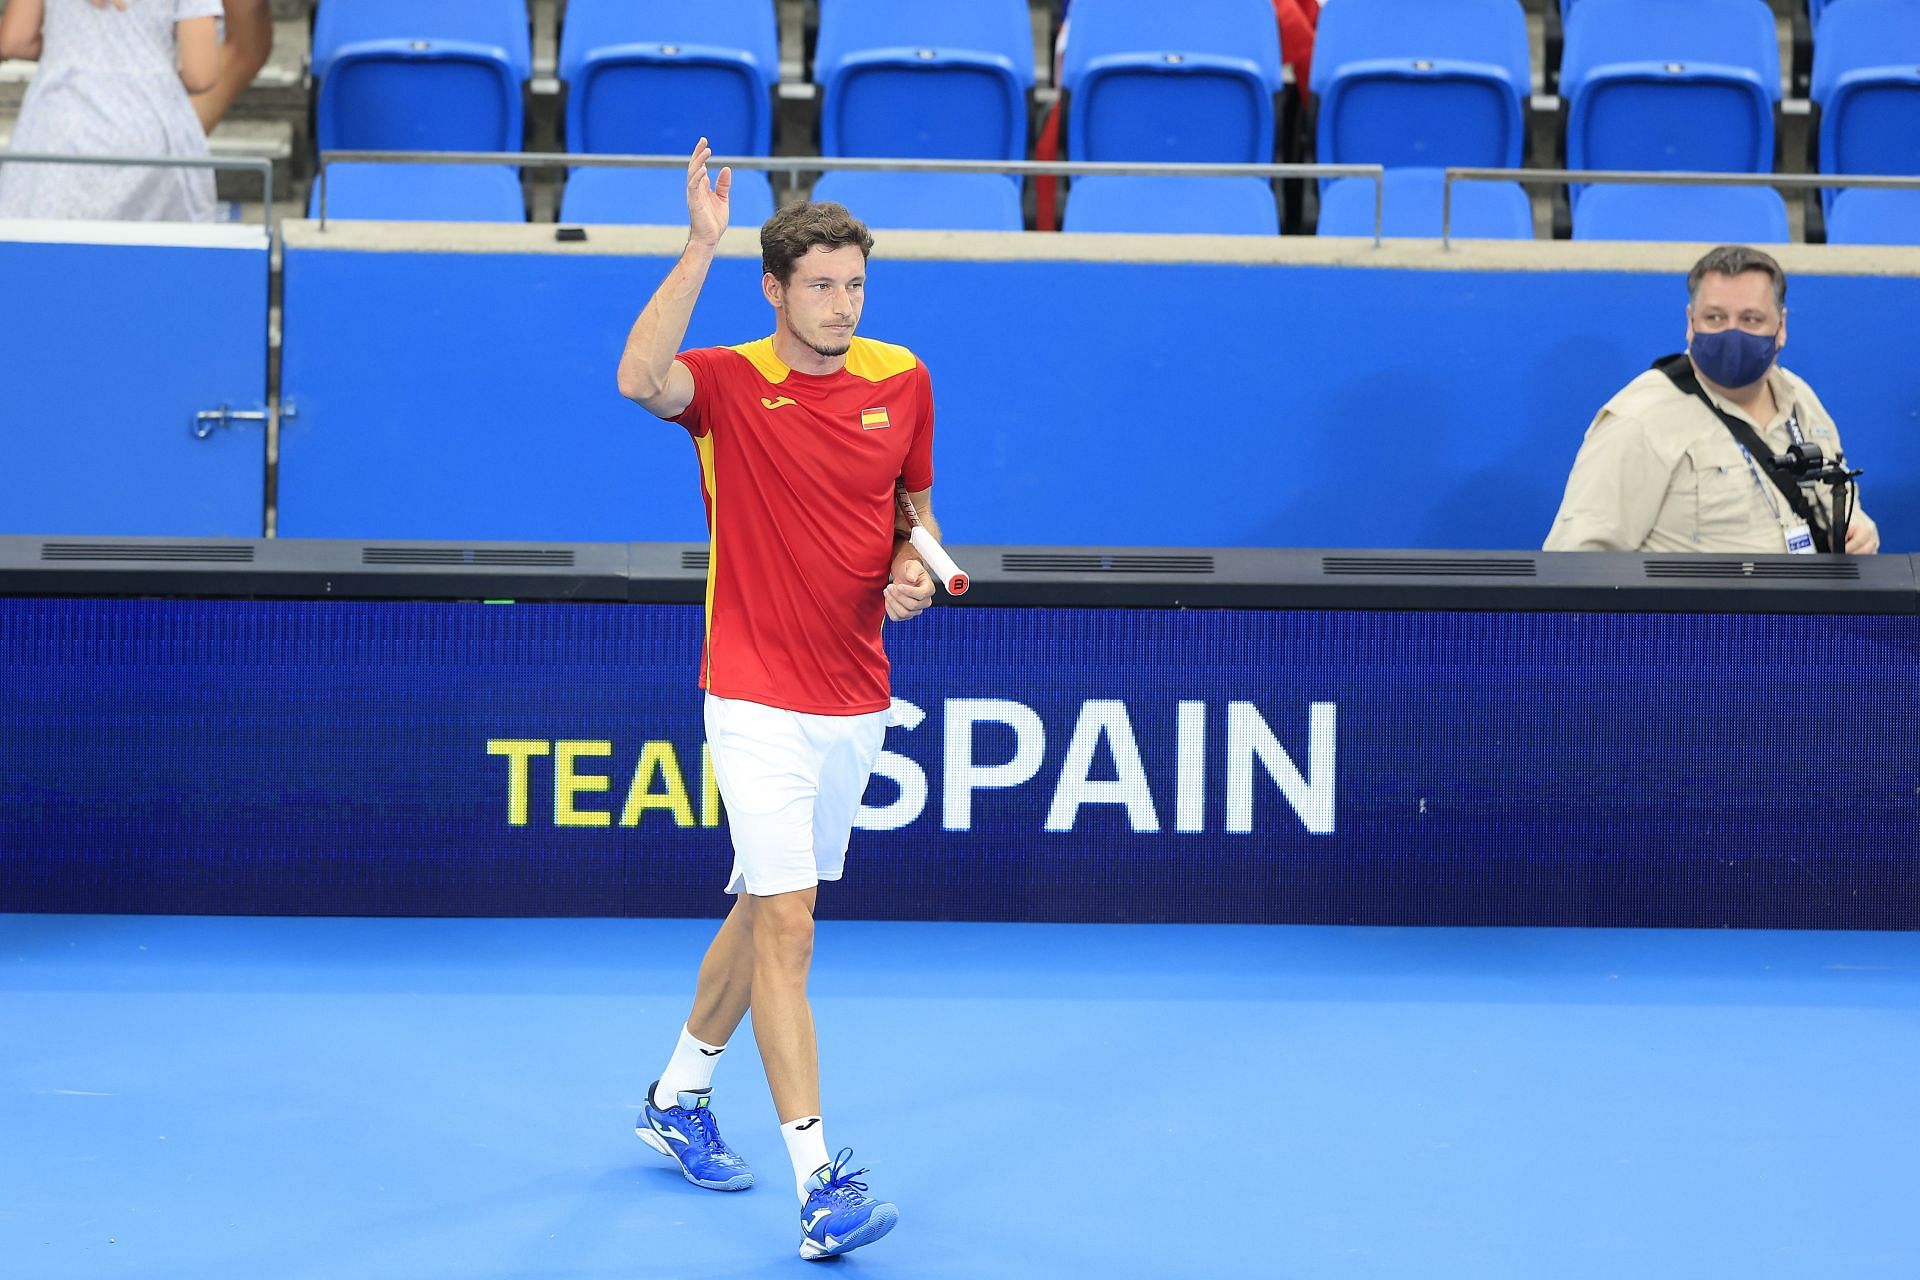 Carreno Busta helped Spain reach their third ATP Cup semifinal